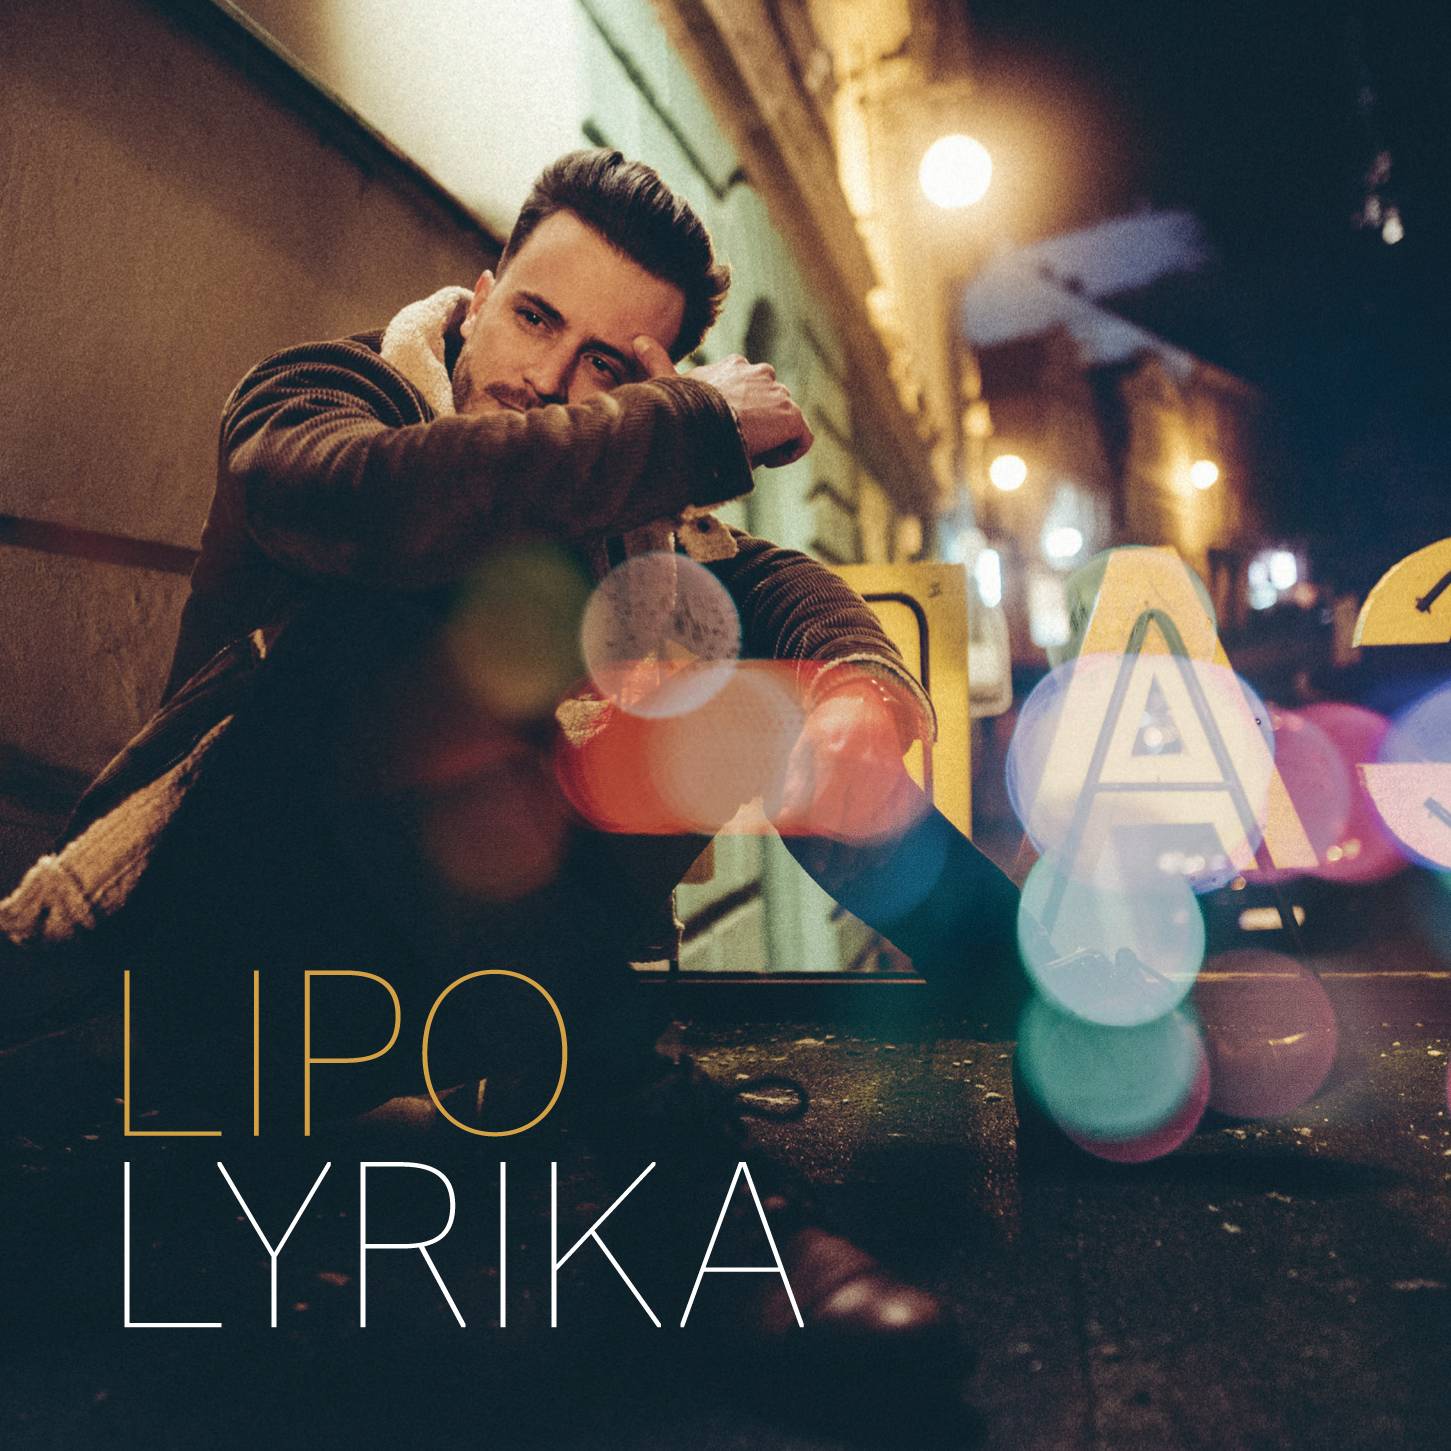 Lipo interview: Na albu Lyrika jsem věrný svému cítění, nemůžu svoji tvorbu znásilňovat